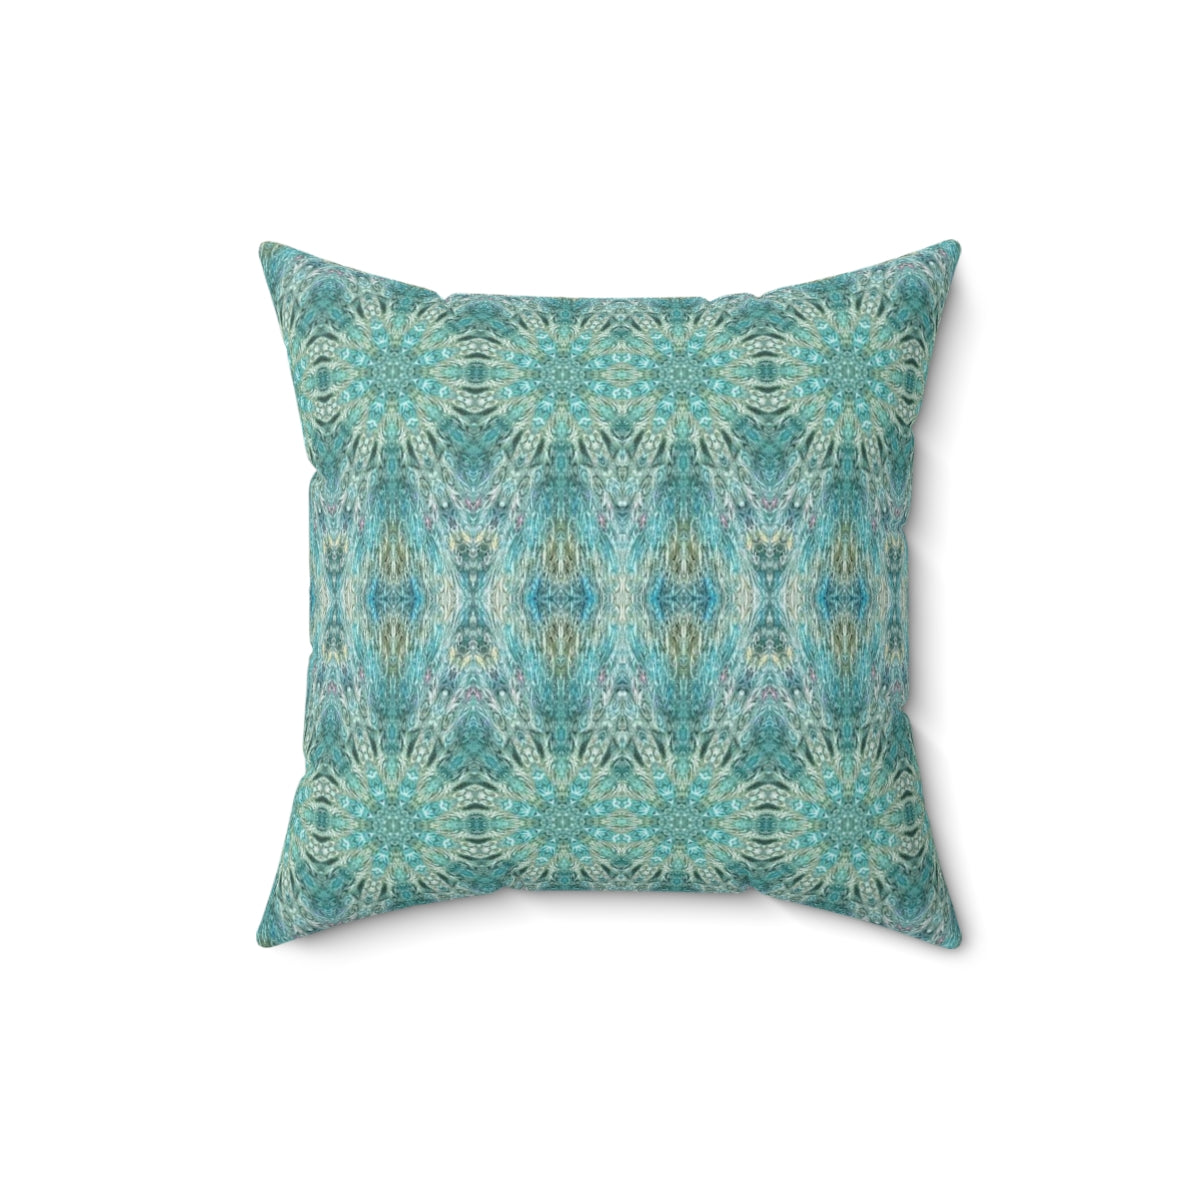 Beautiful Blue decorative pillows